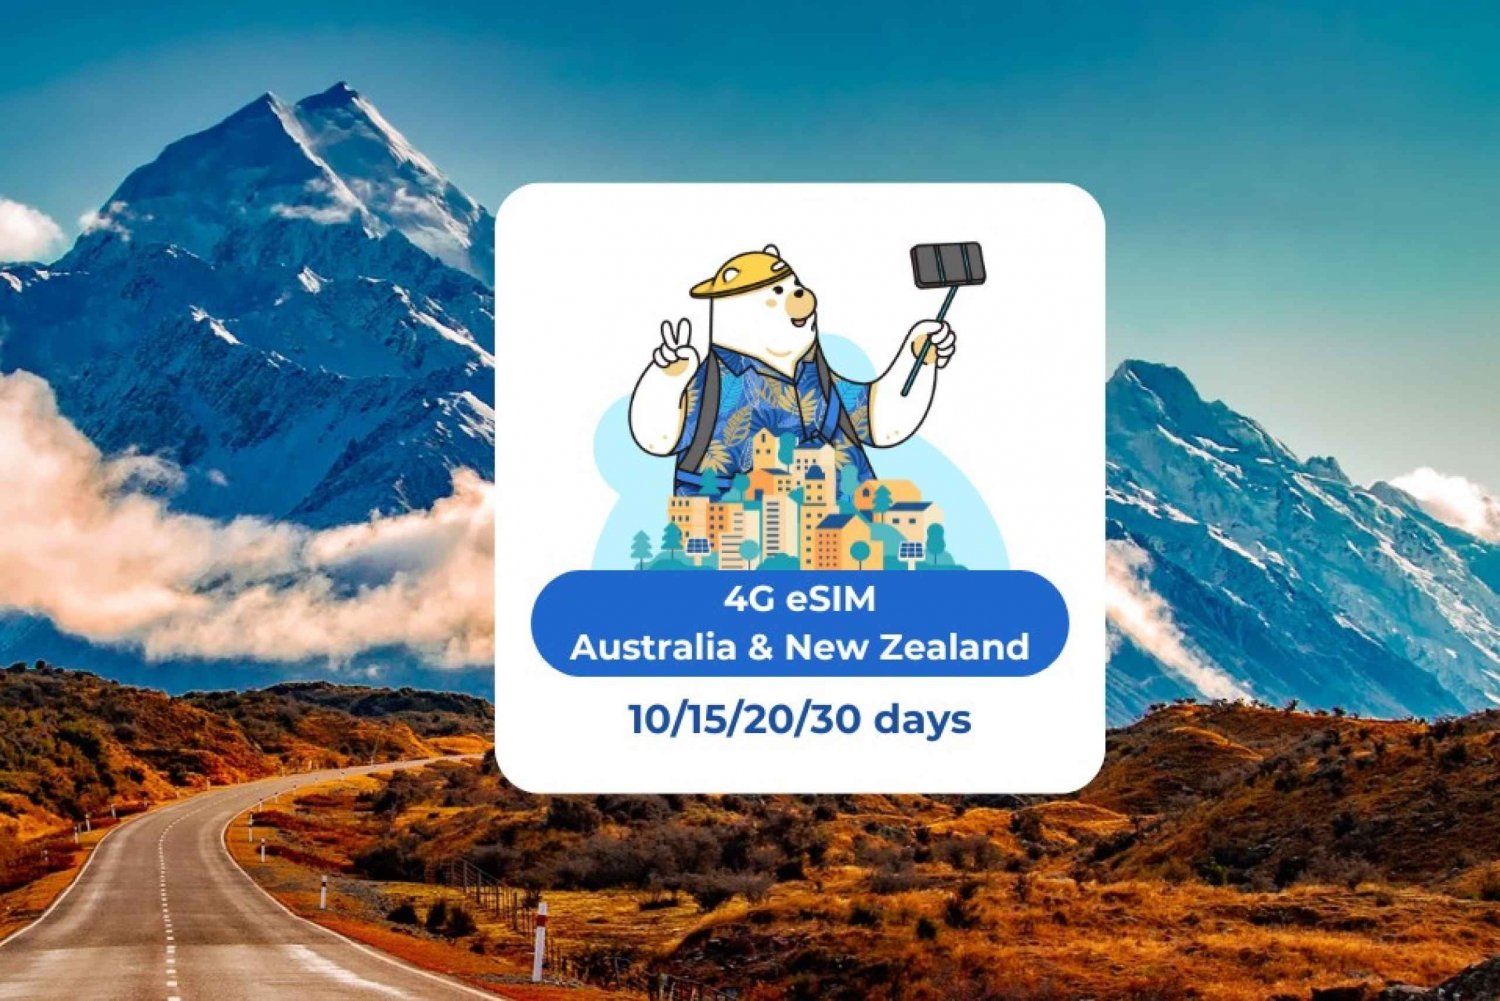 Australie et Nouvelle-Zélande : eSIM Mobile Data 10/15/20/30 jours